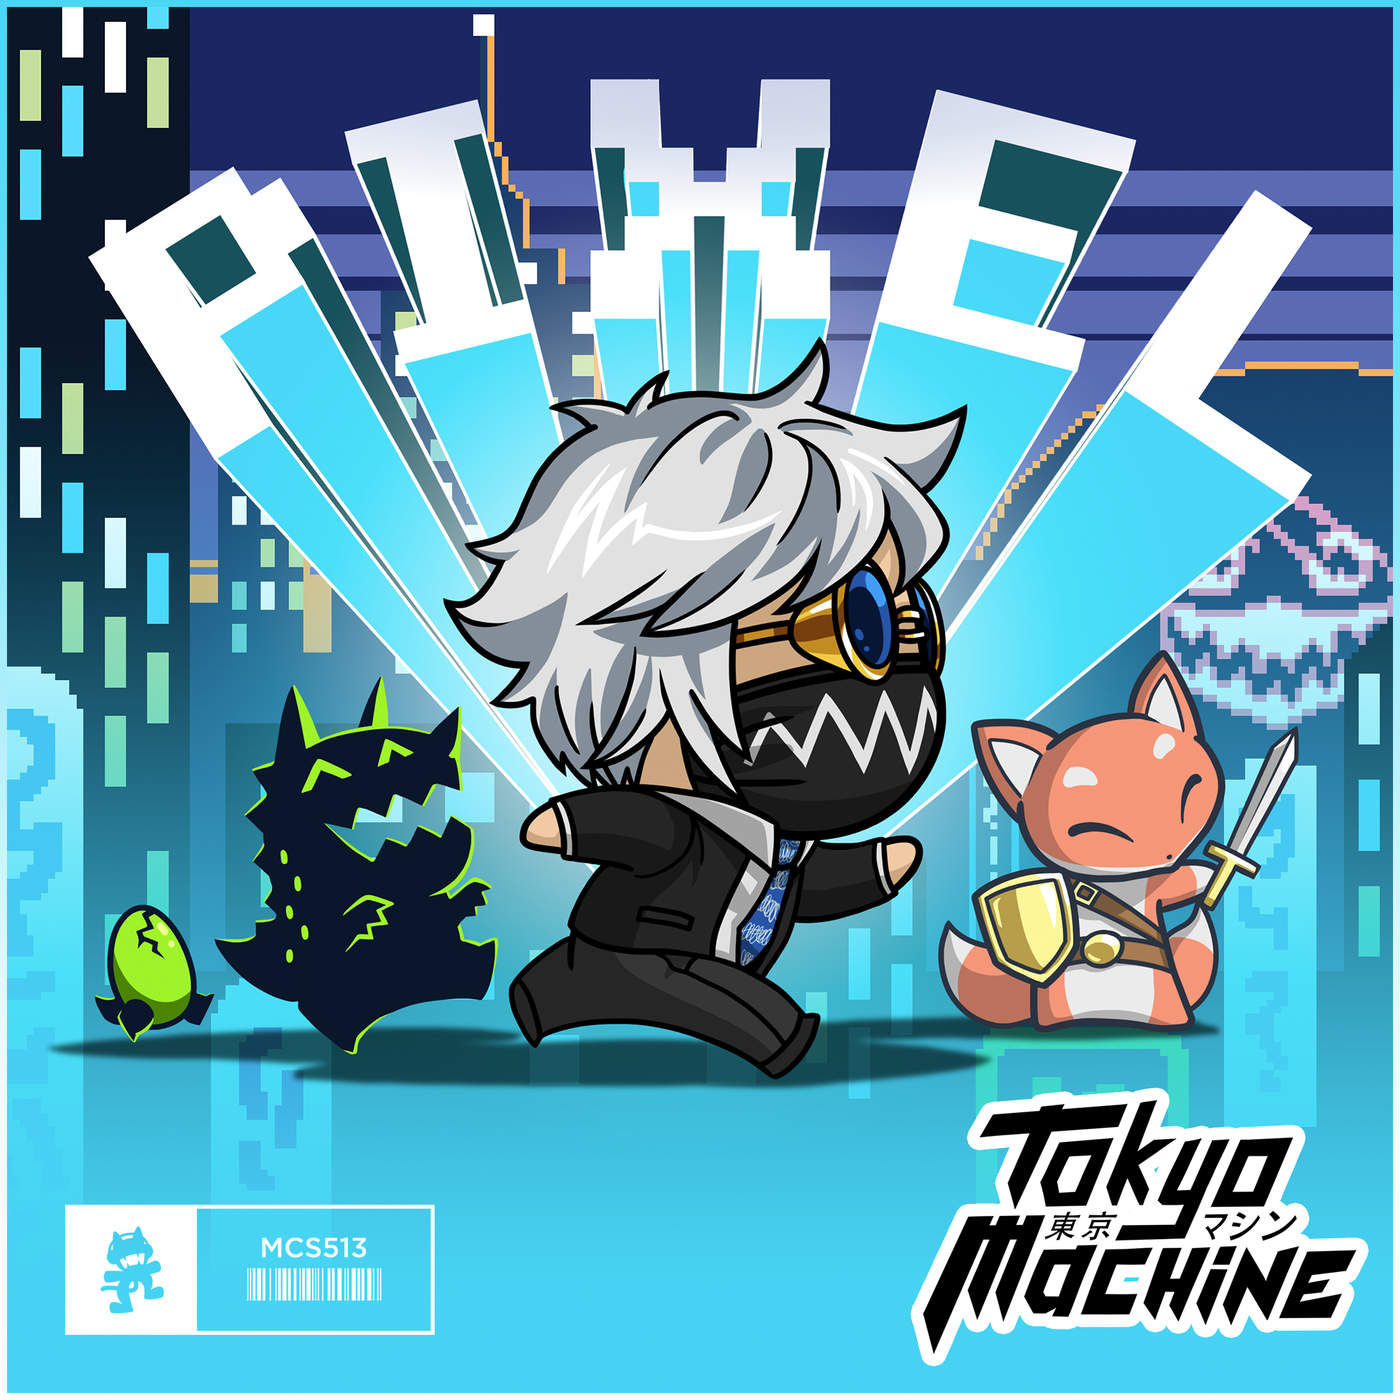 Tokyo Machine - PIXEL [Monstercat Release] (신남, 격렬, 클럽, 비트, 8비트)